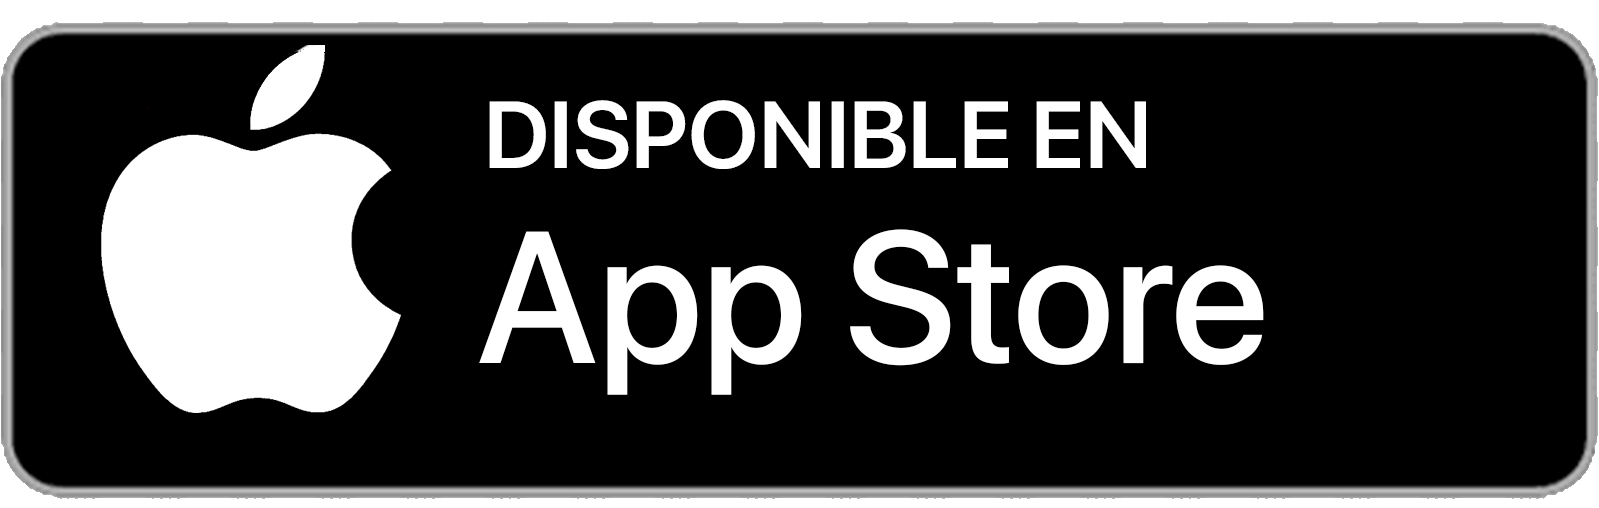 Descarga-en-App-Store